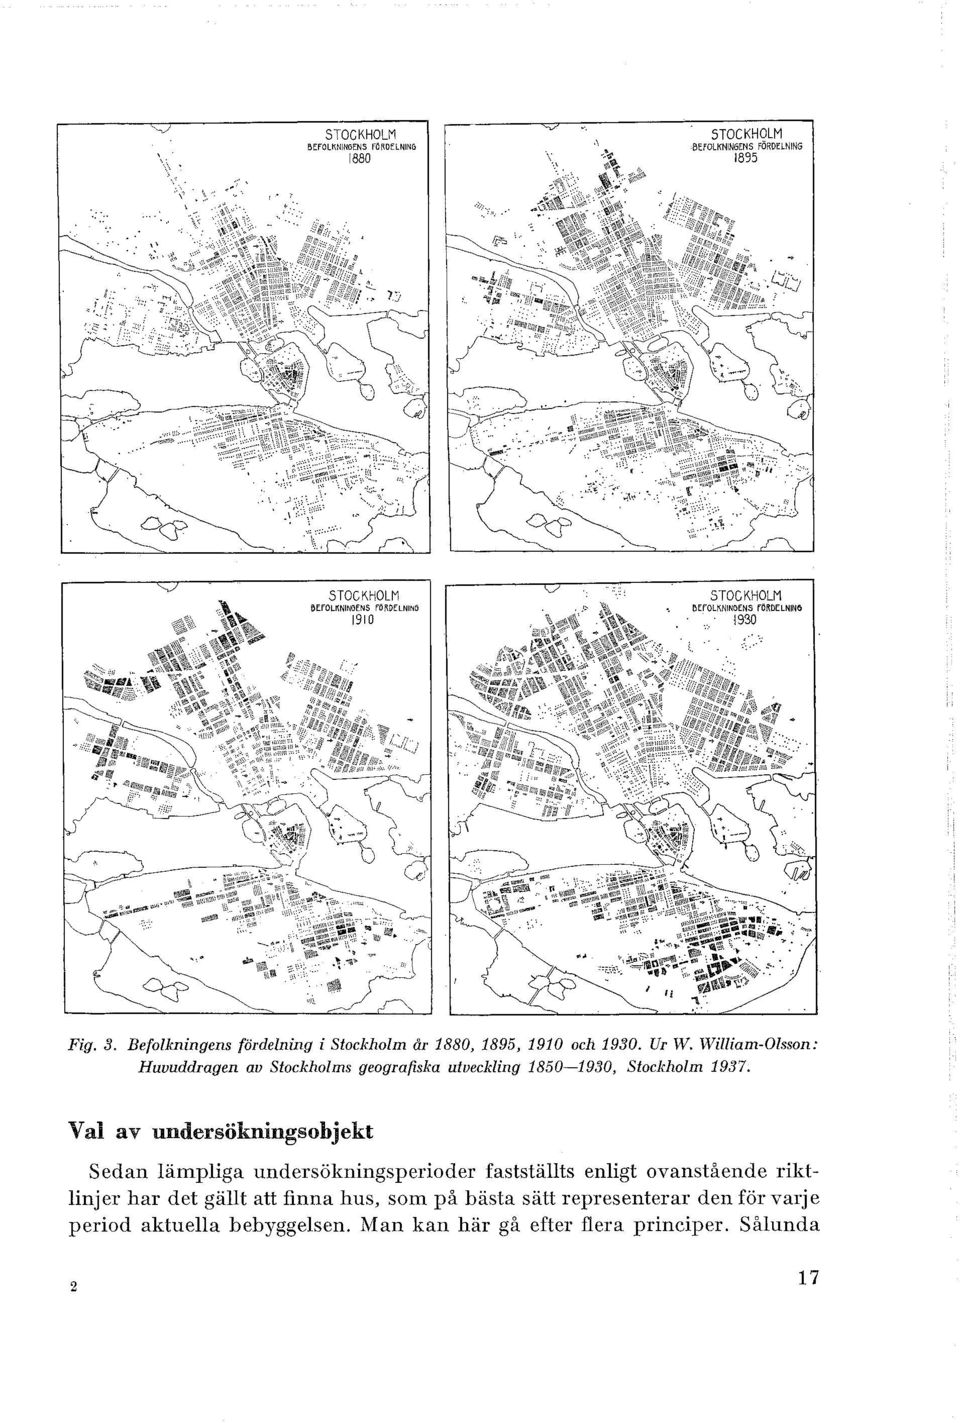 Wiiam-Osson: Huvuddragen au Sackhoms geografiska utvecking 1850-1930, Sackhom 1937.